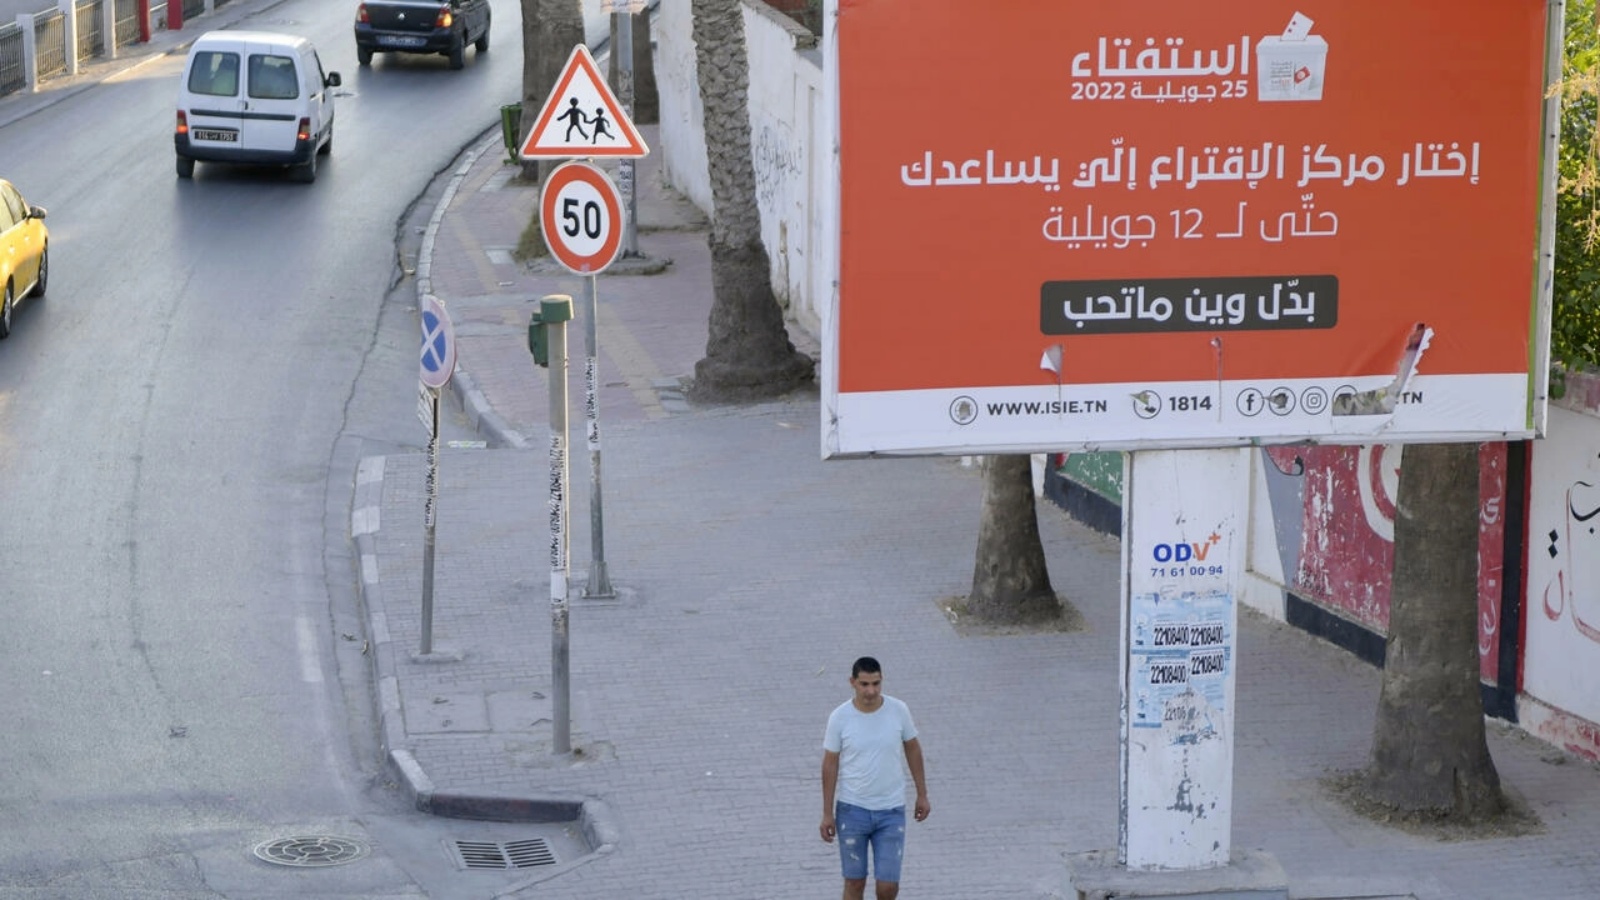 لوحة إعلانية في العاصمة التونسية في 21 يوليو 2022 قبل استفتاء قرر في 25 من الشهر نفسه